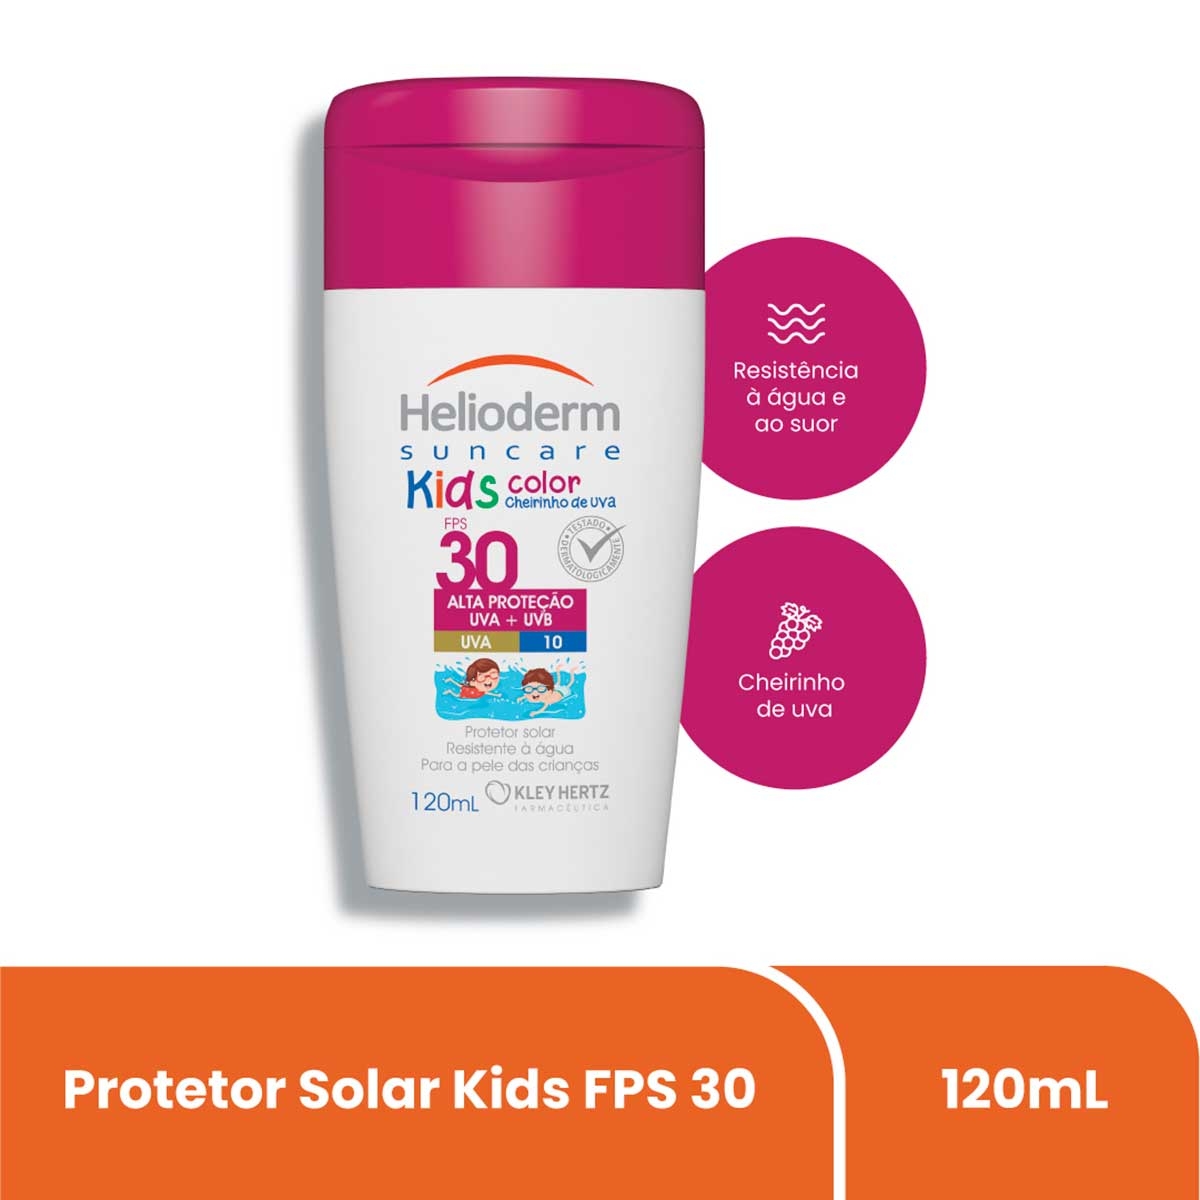 Protetor Solar Corporal Helioderm Suncare Kids Color FPS30 com 120ml 120ml